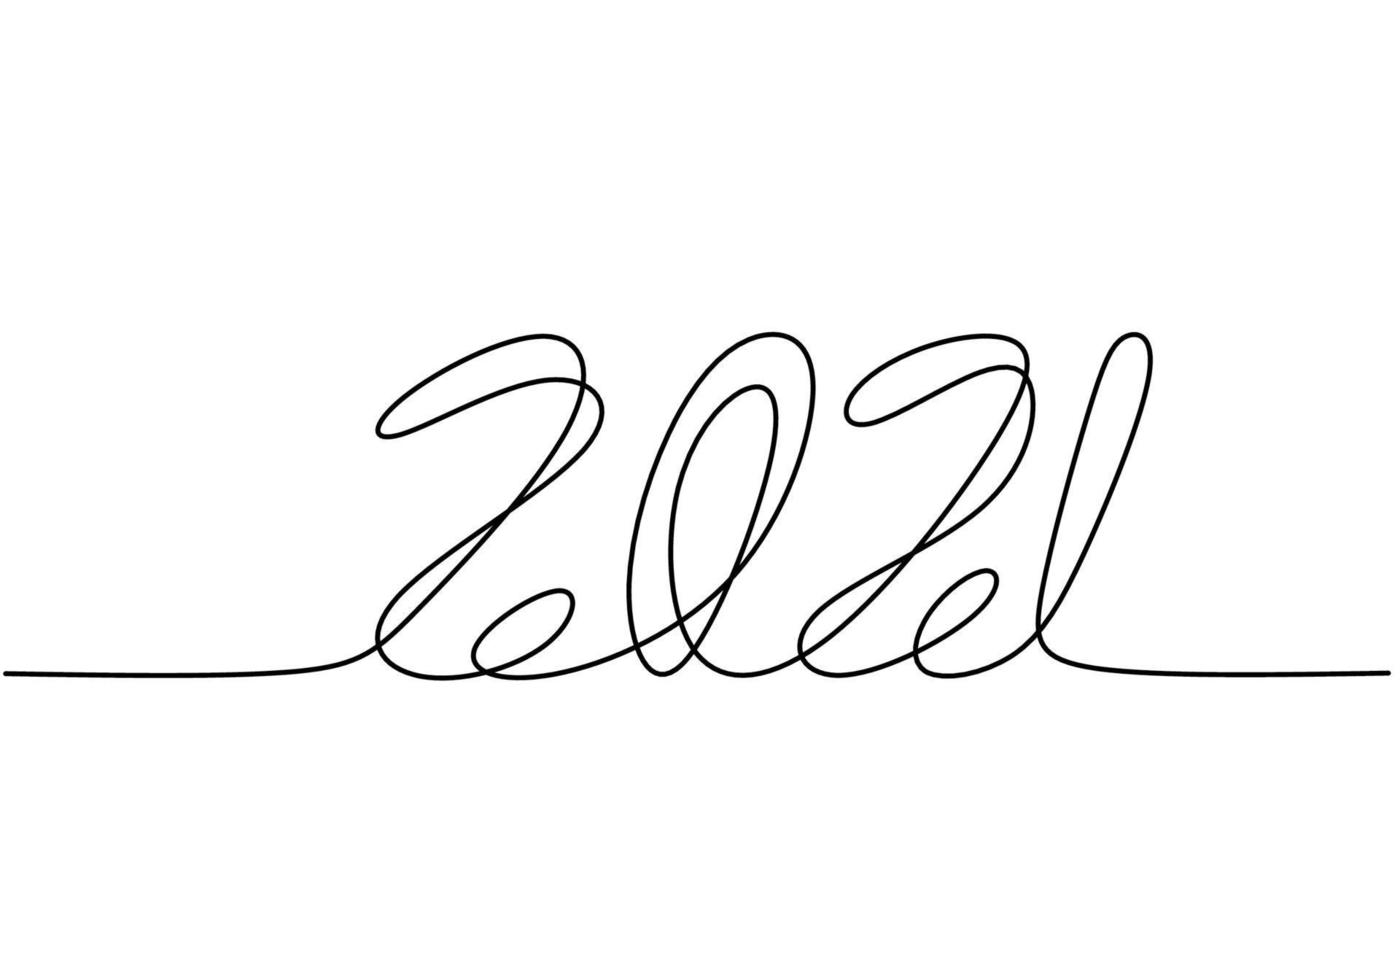 dessin continu d'une ligne d'une nouvelle année 2021. nouvel an chinois du taureau lettrage manuscrit. célébration du nouvel an concept isolé sur fond blanc. illustration de croquis de vecteur